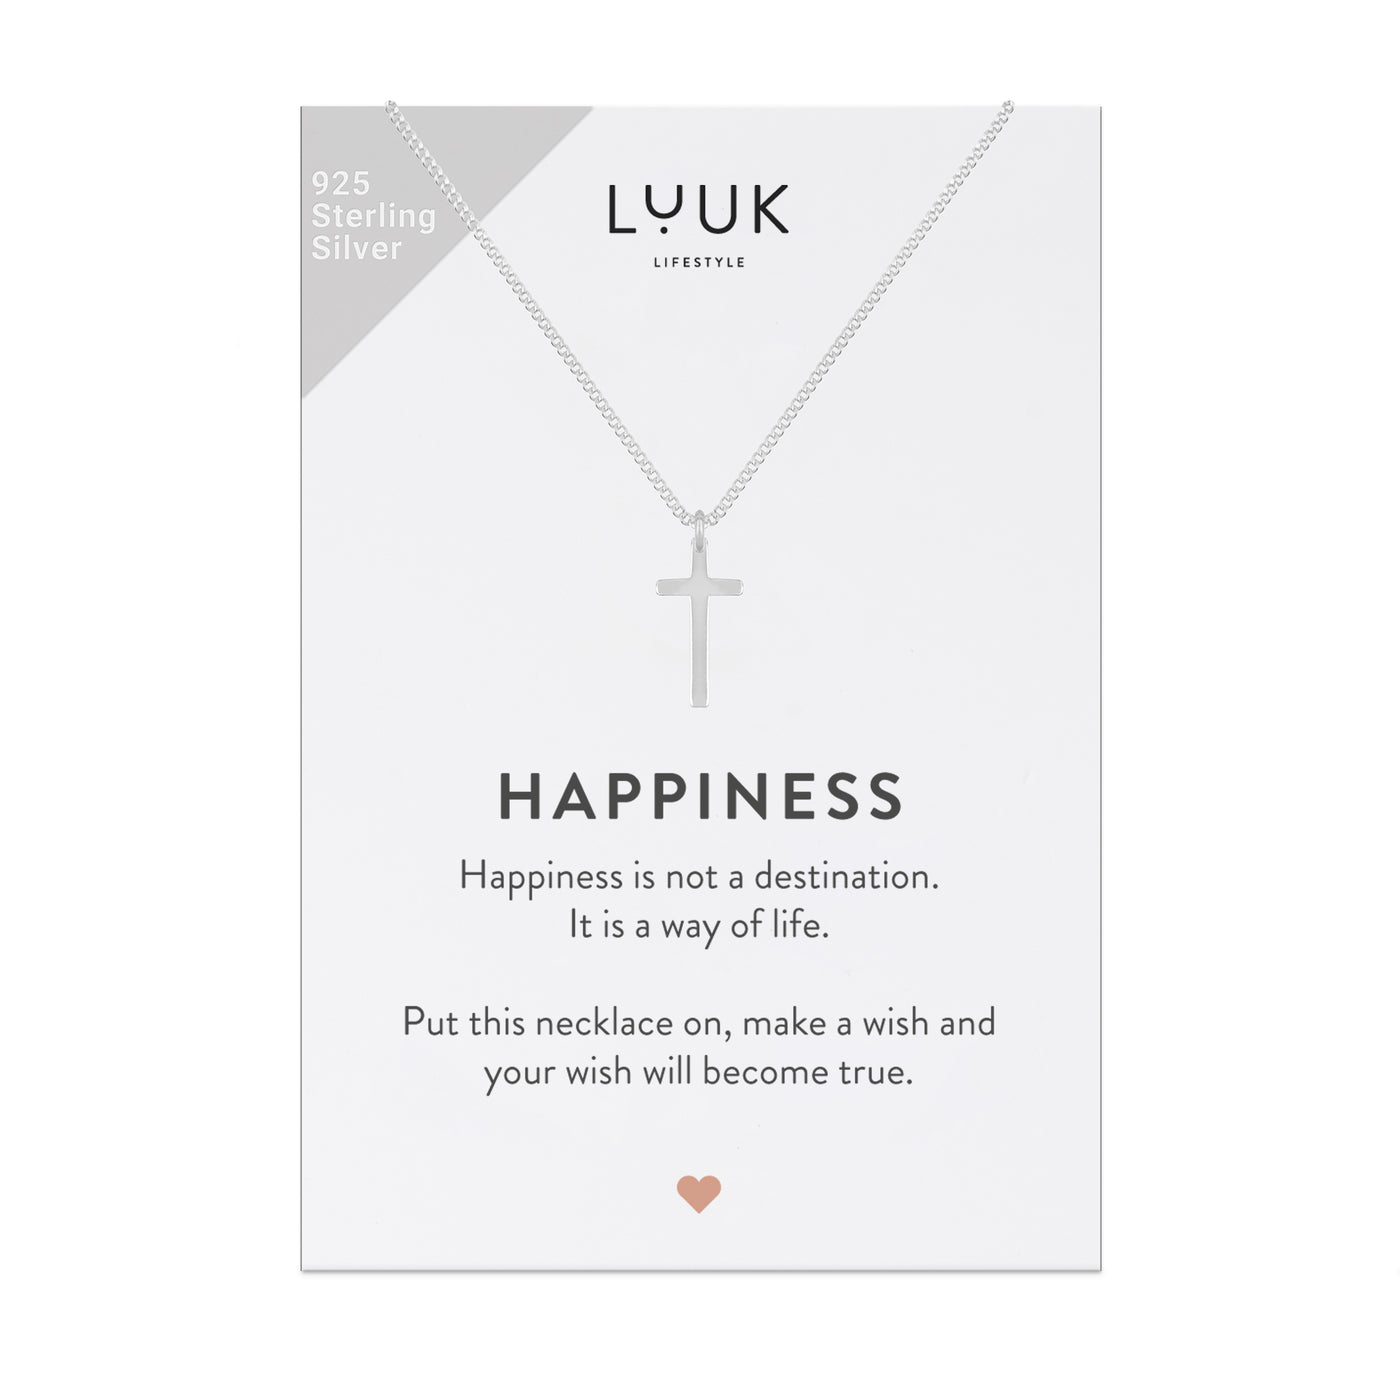 Feine 925 Silber Kette mit Kreuz Anhänger auf Happiness Spruchkarte von der Marke Luuk Lifestyle 